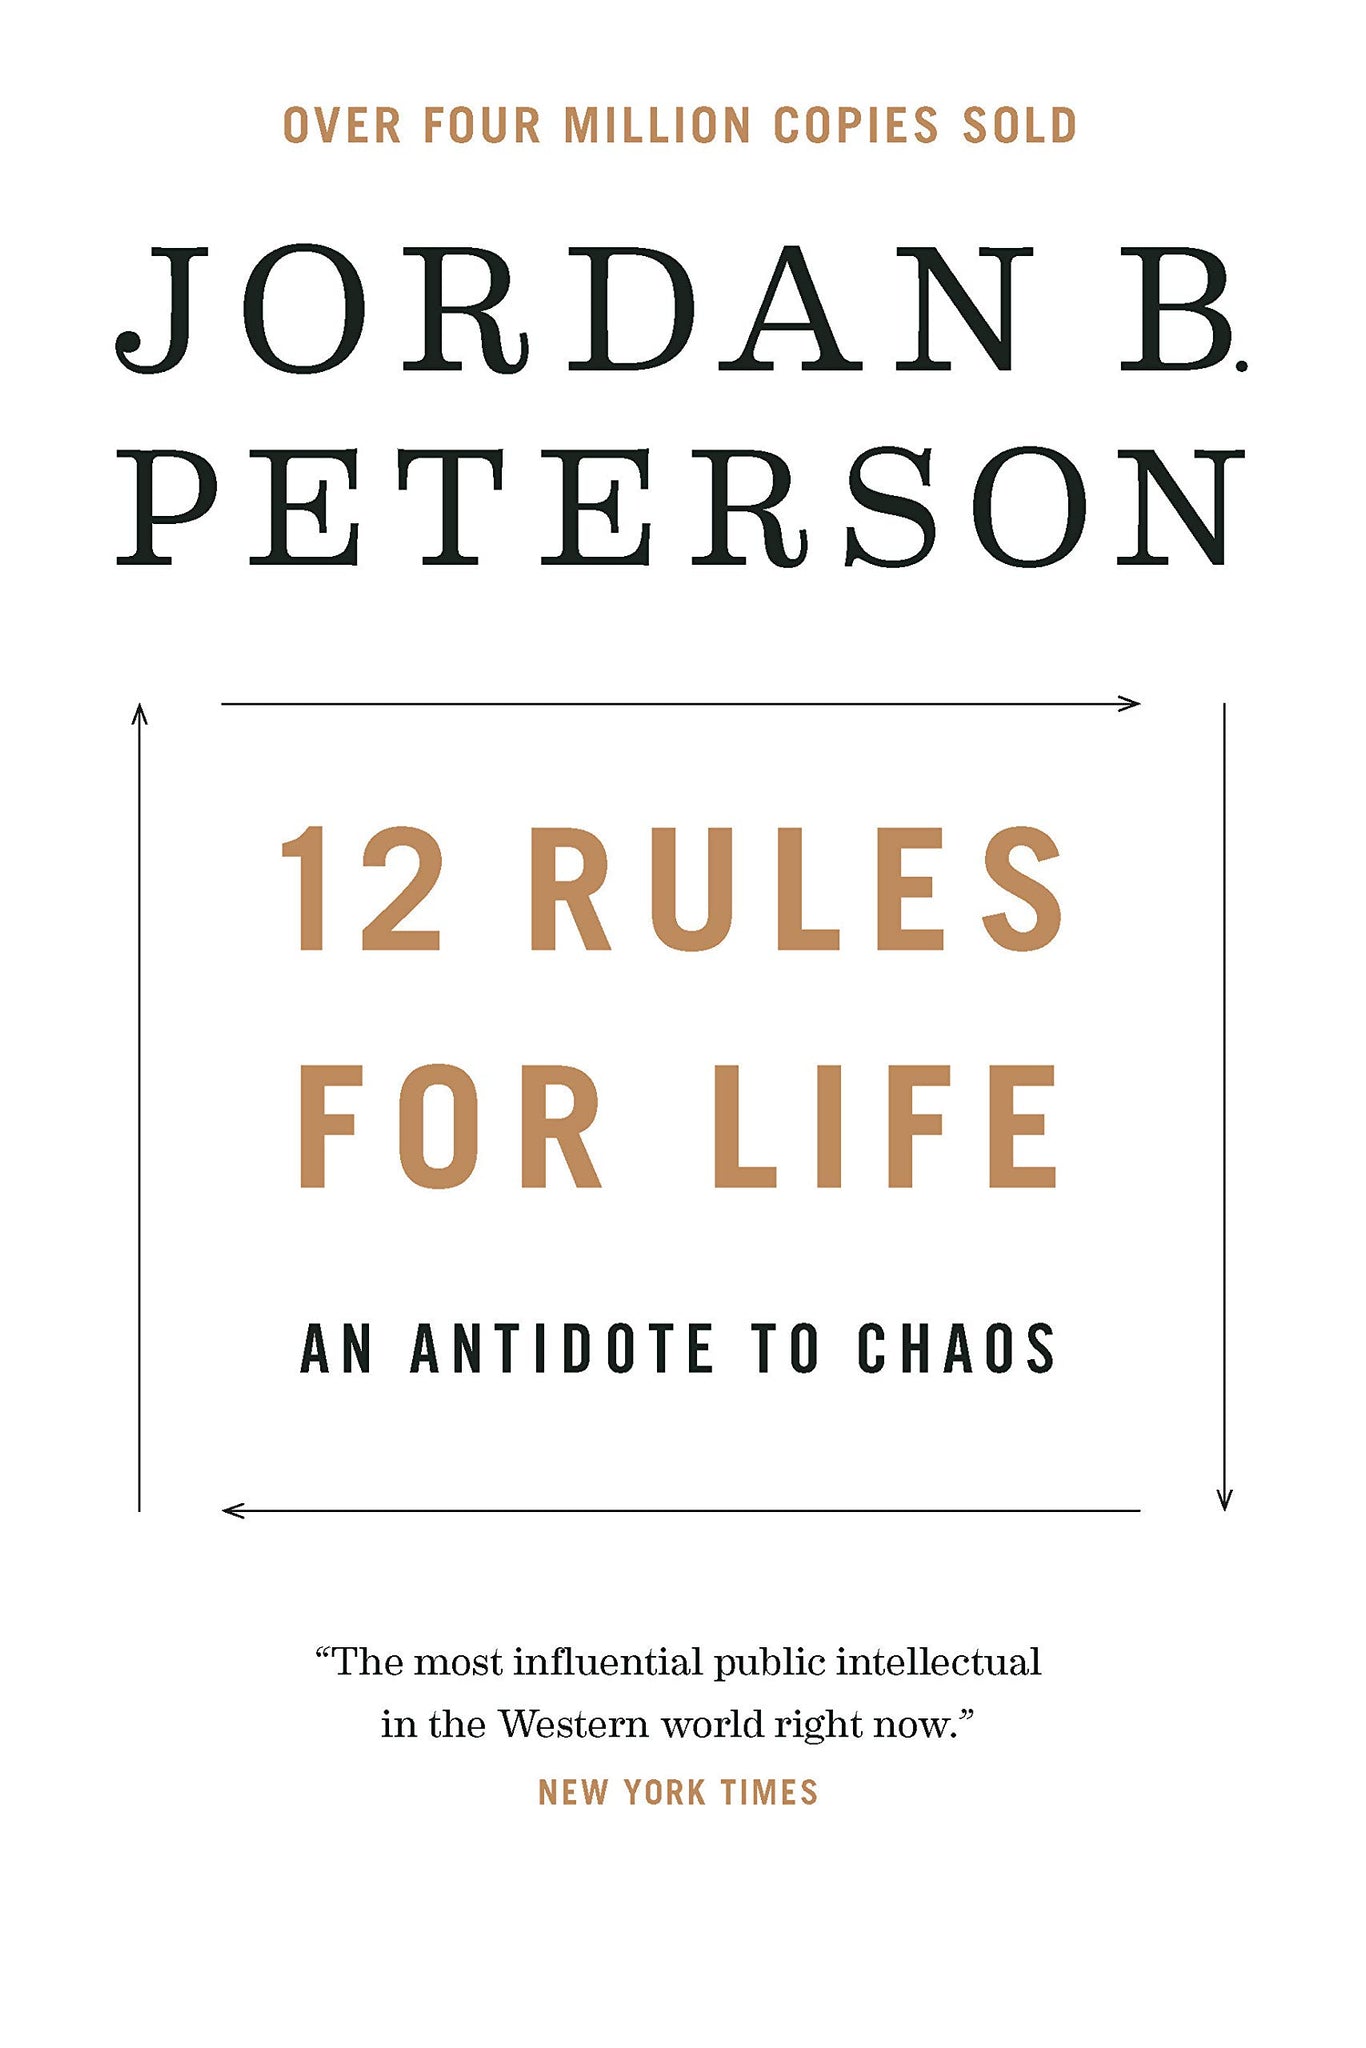 12 Regras para a Vida de Jordan B. Peterson